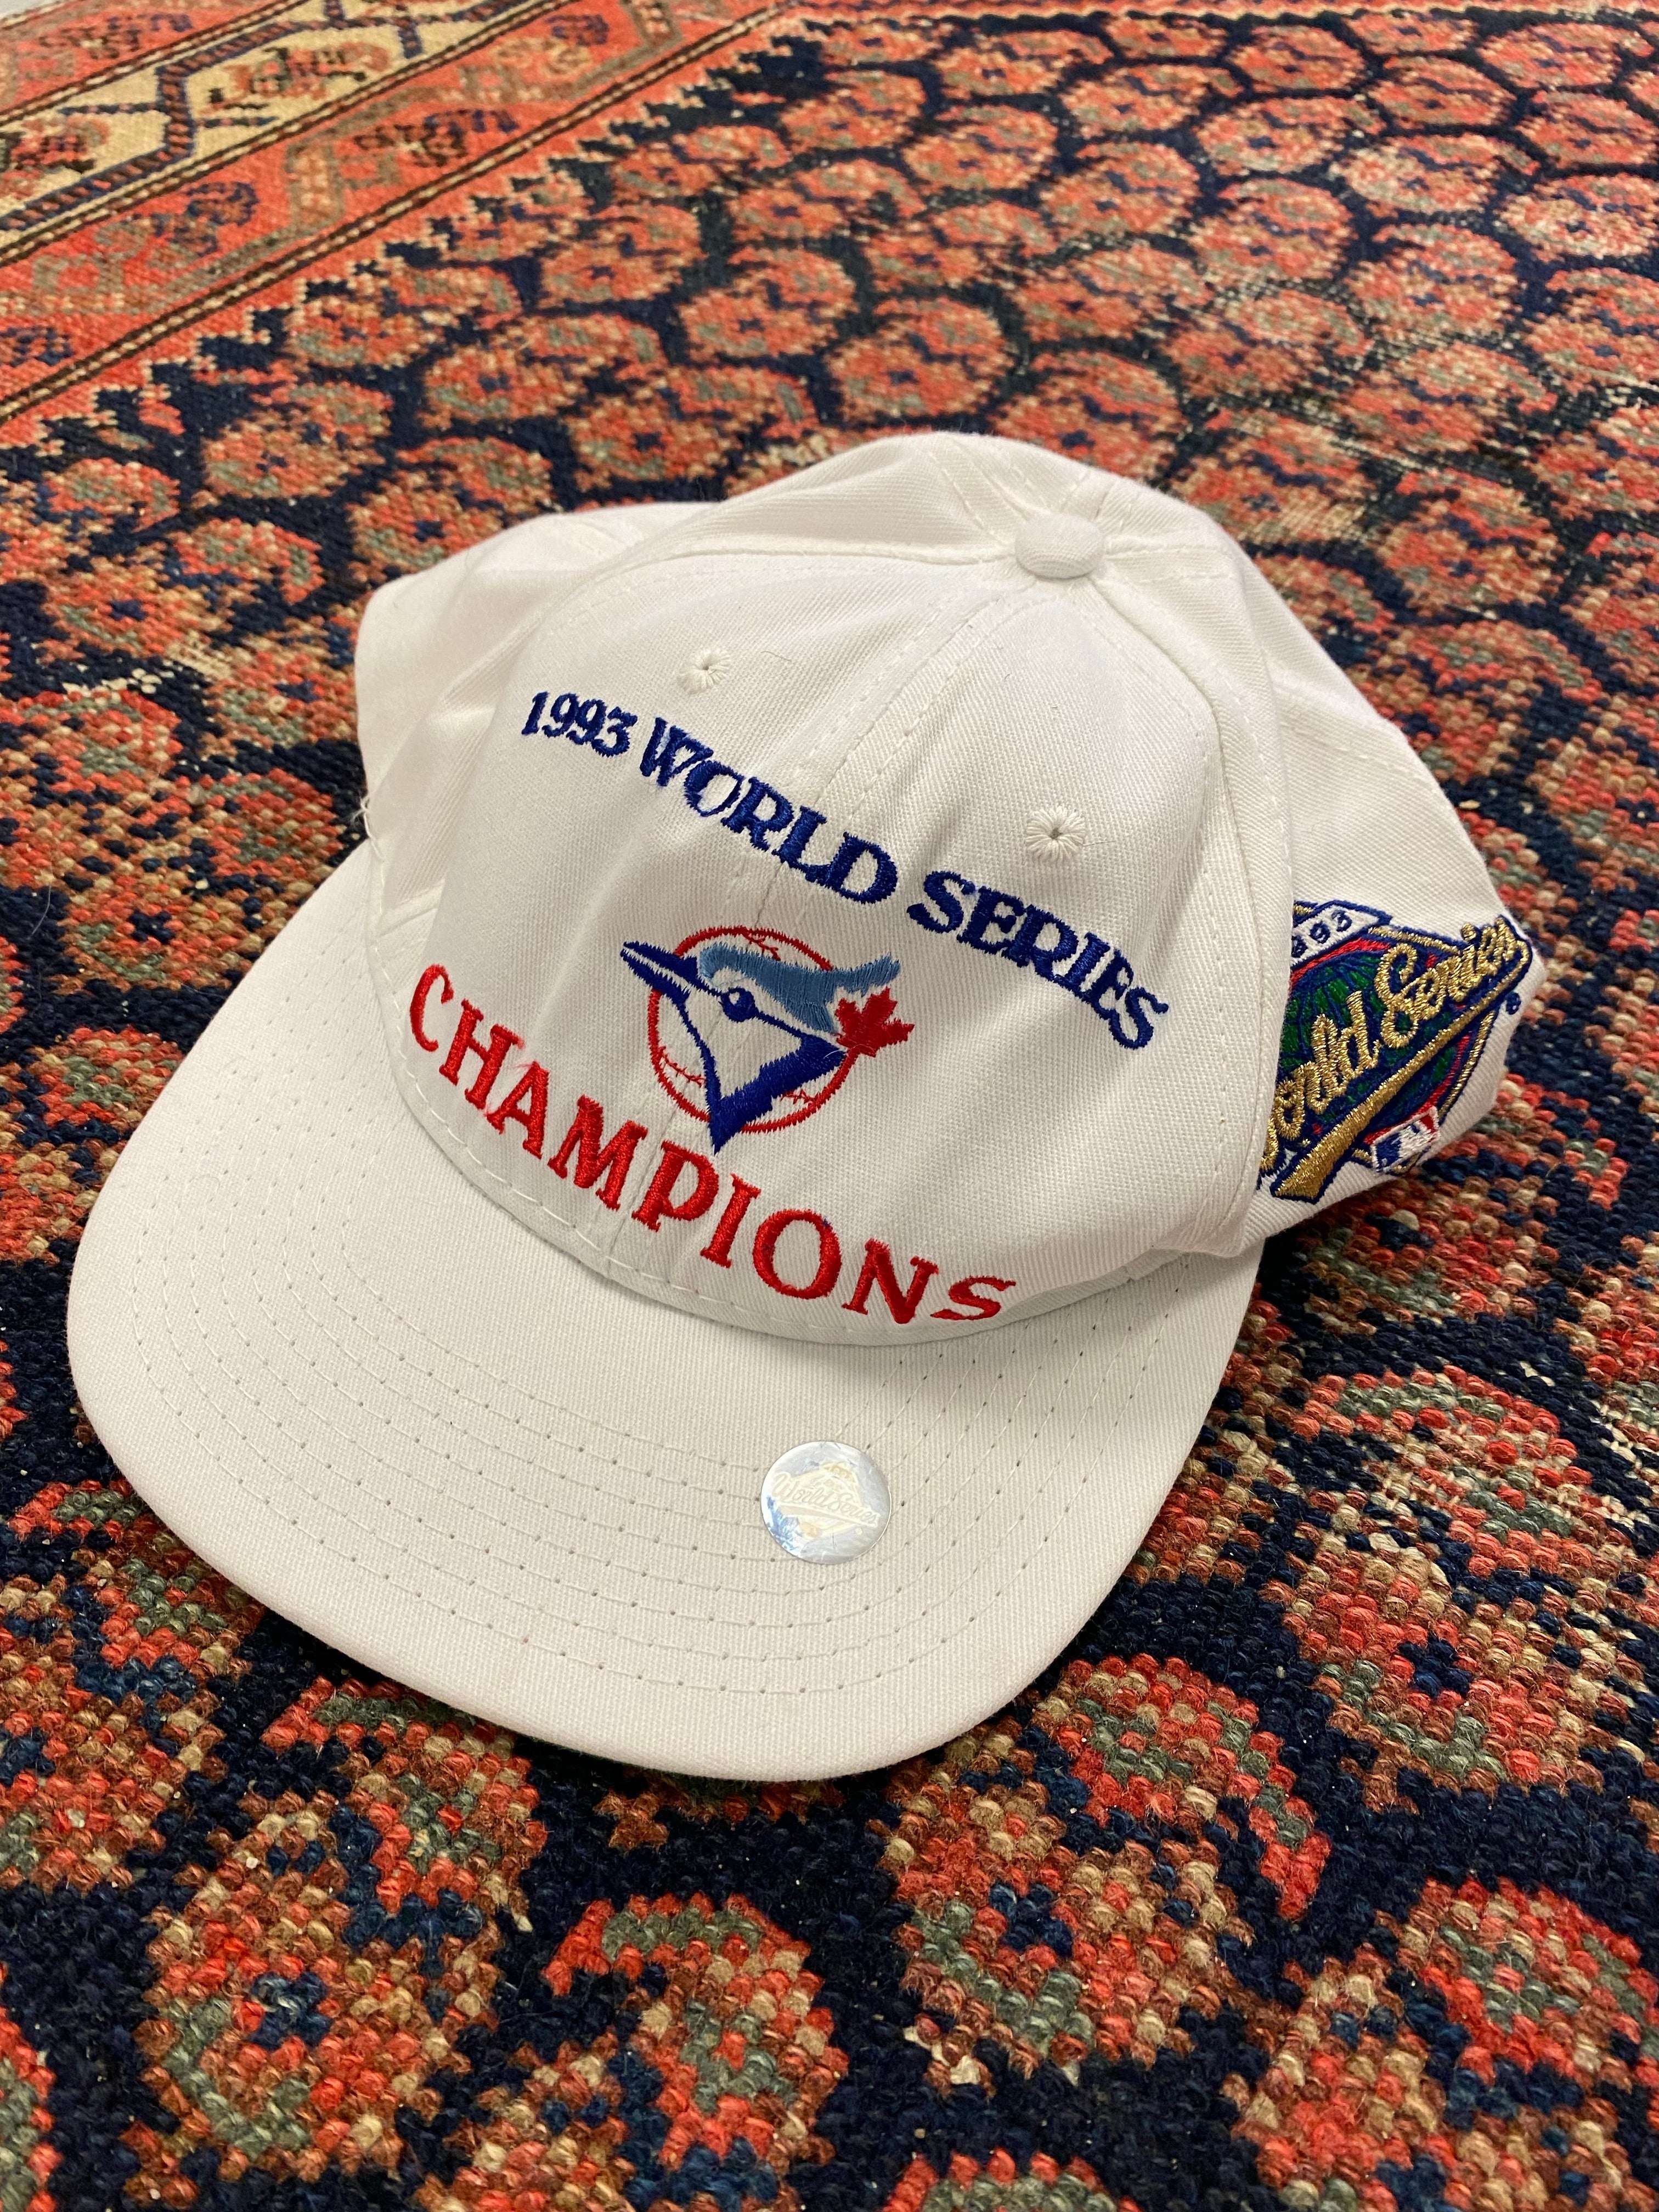 Vintage 1992 World Series Champions Toronto Blue Jays Snapback 